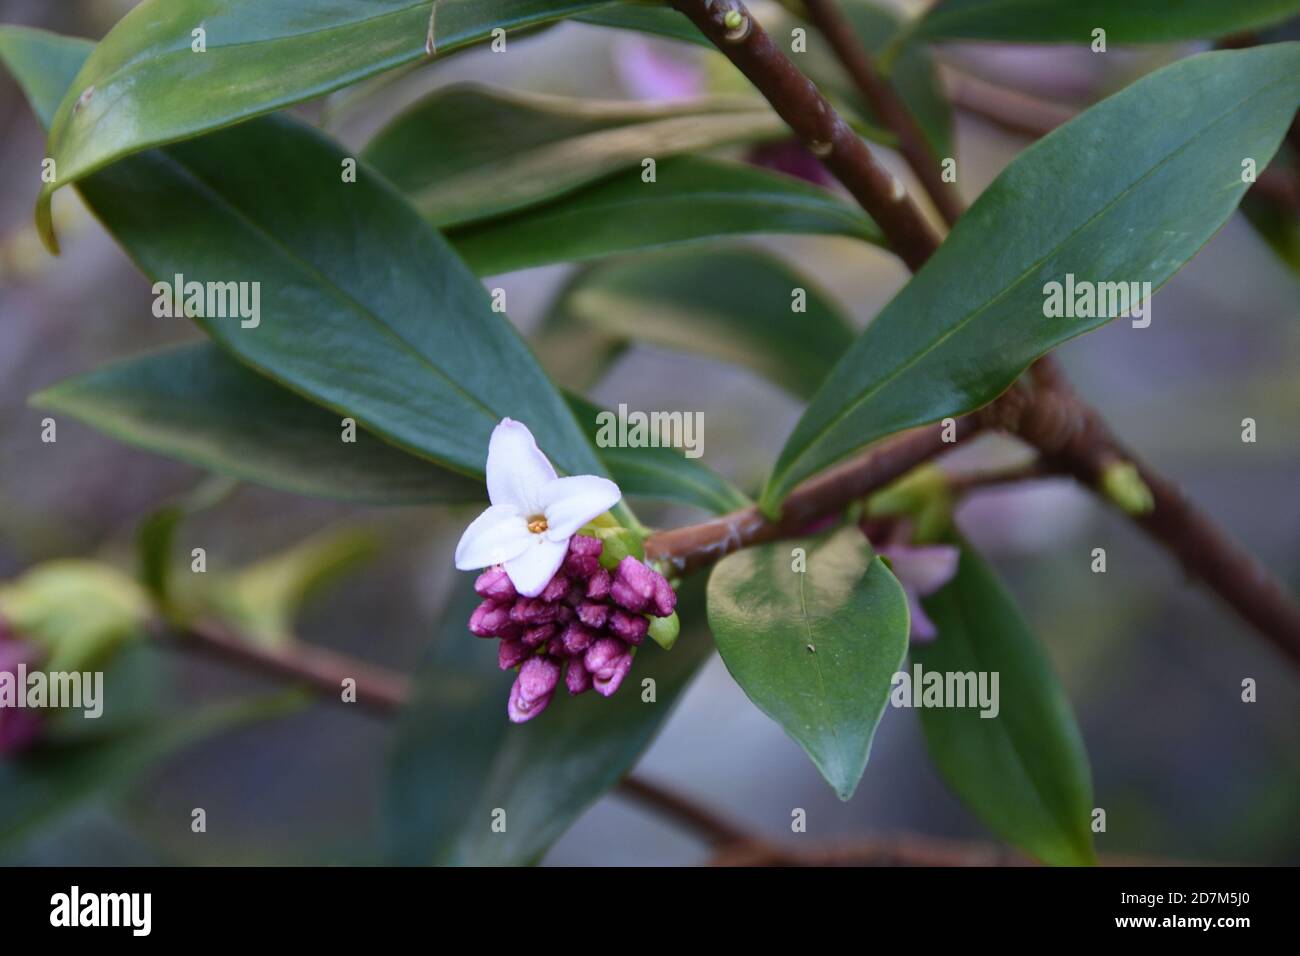 Daphne adora, die blassrosa blühende immergrüne Pflanze mit süßem Duft Stockfoto